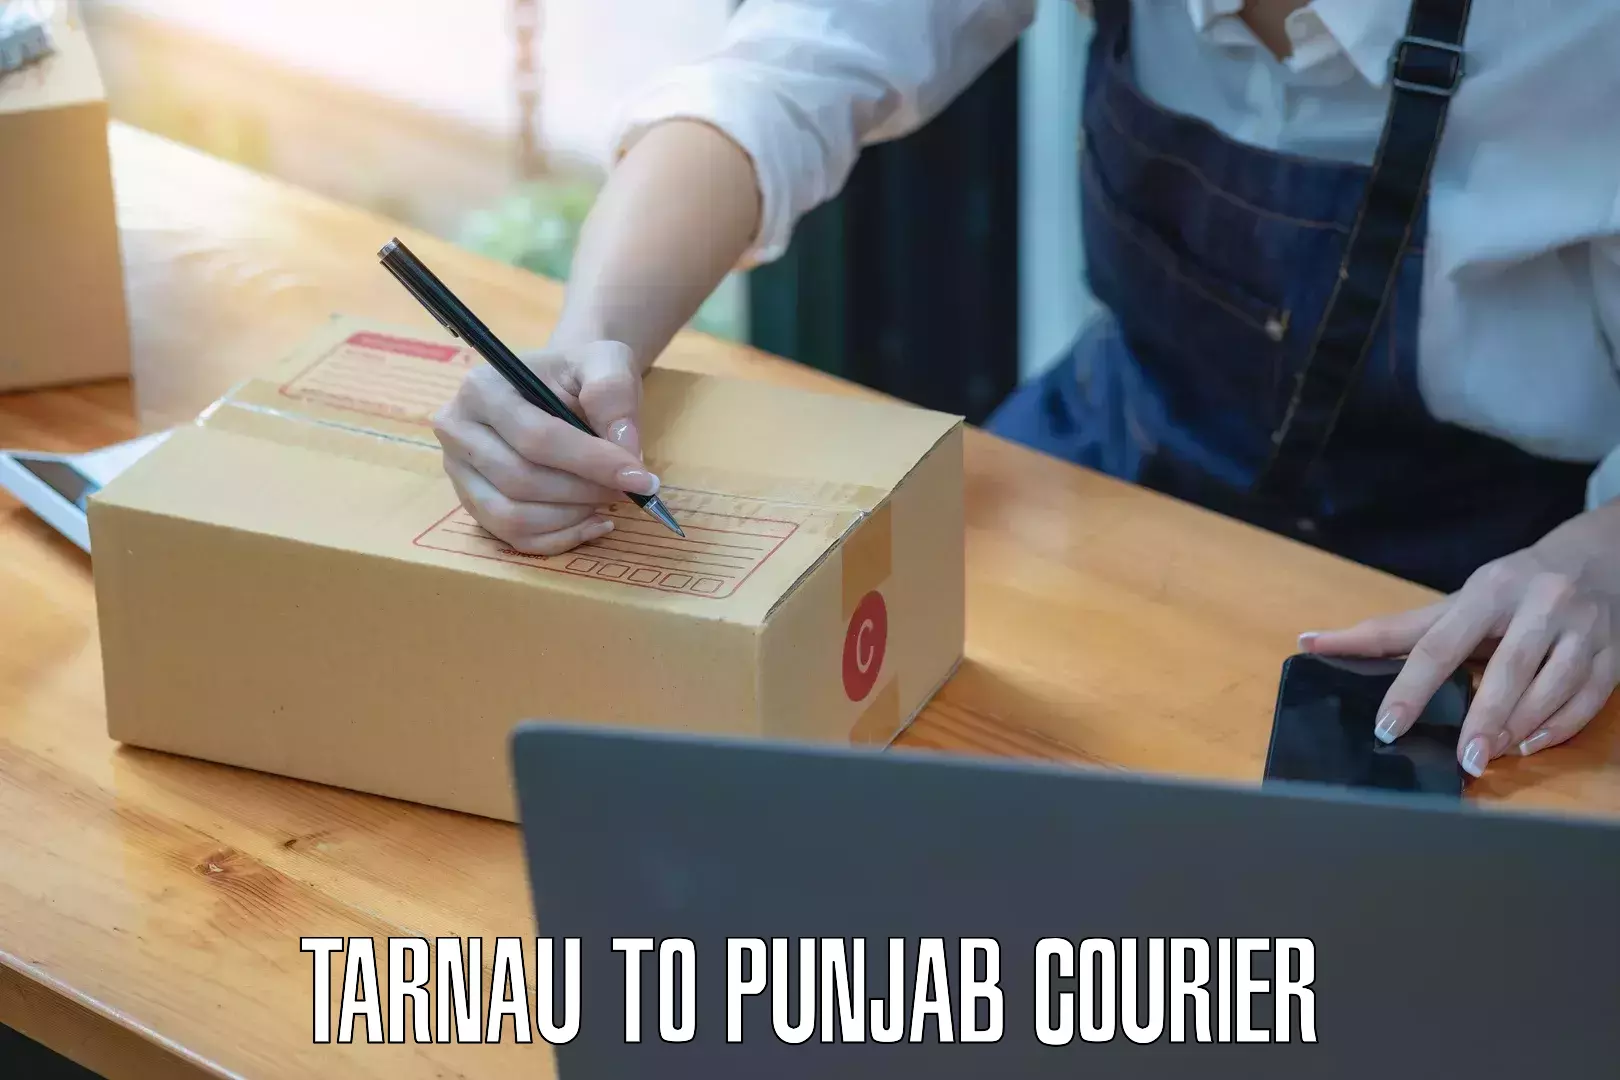 Courier service booking Tarnau to Punjab